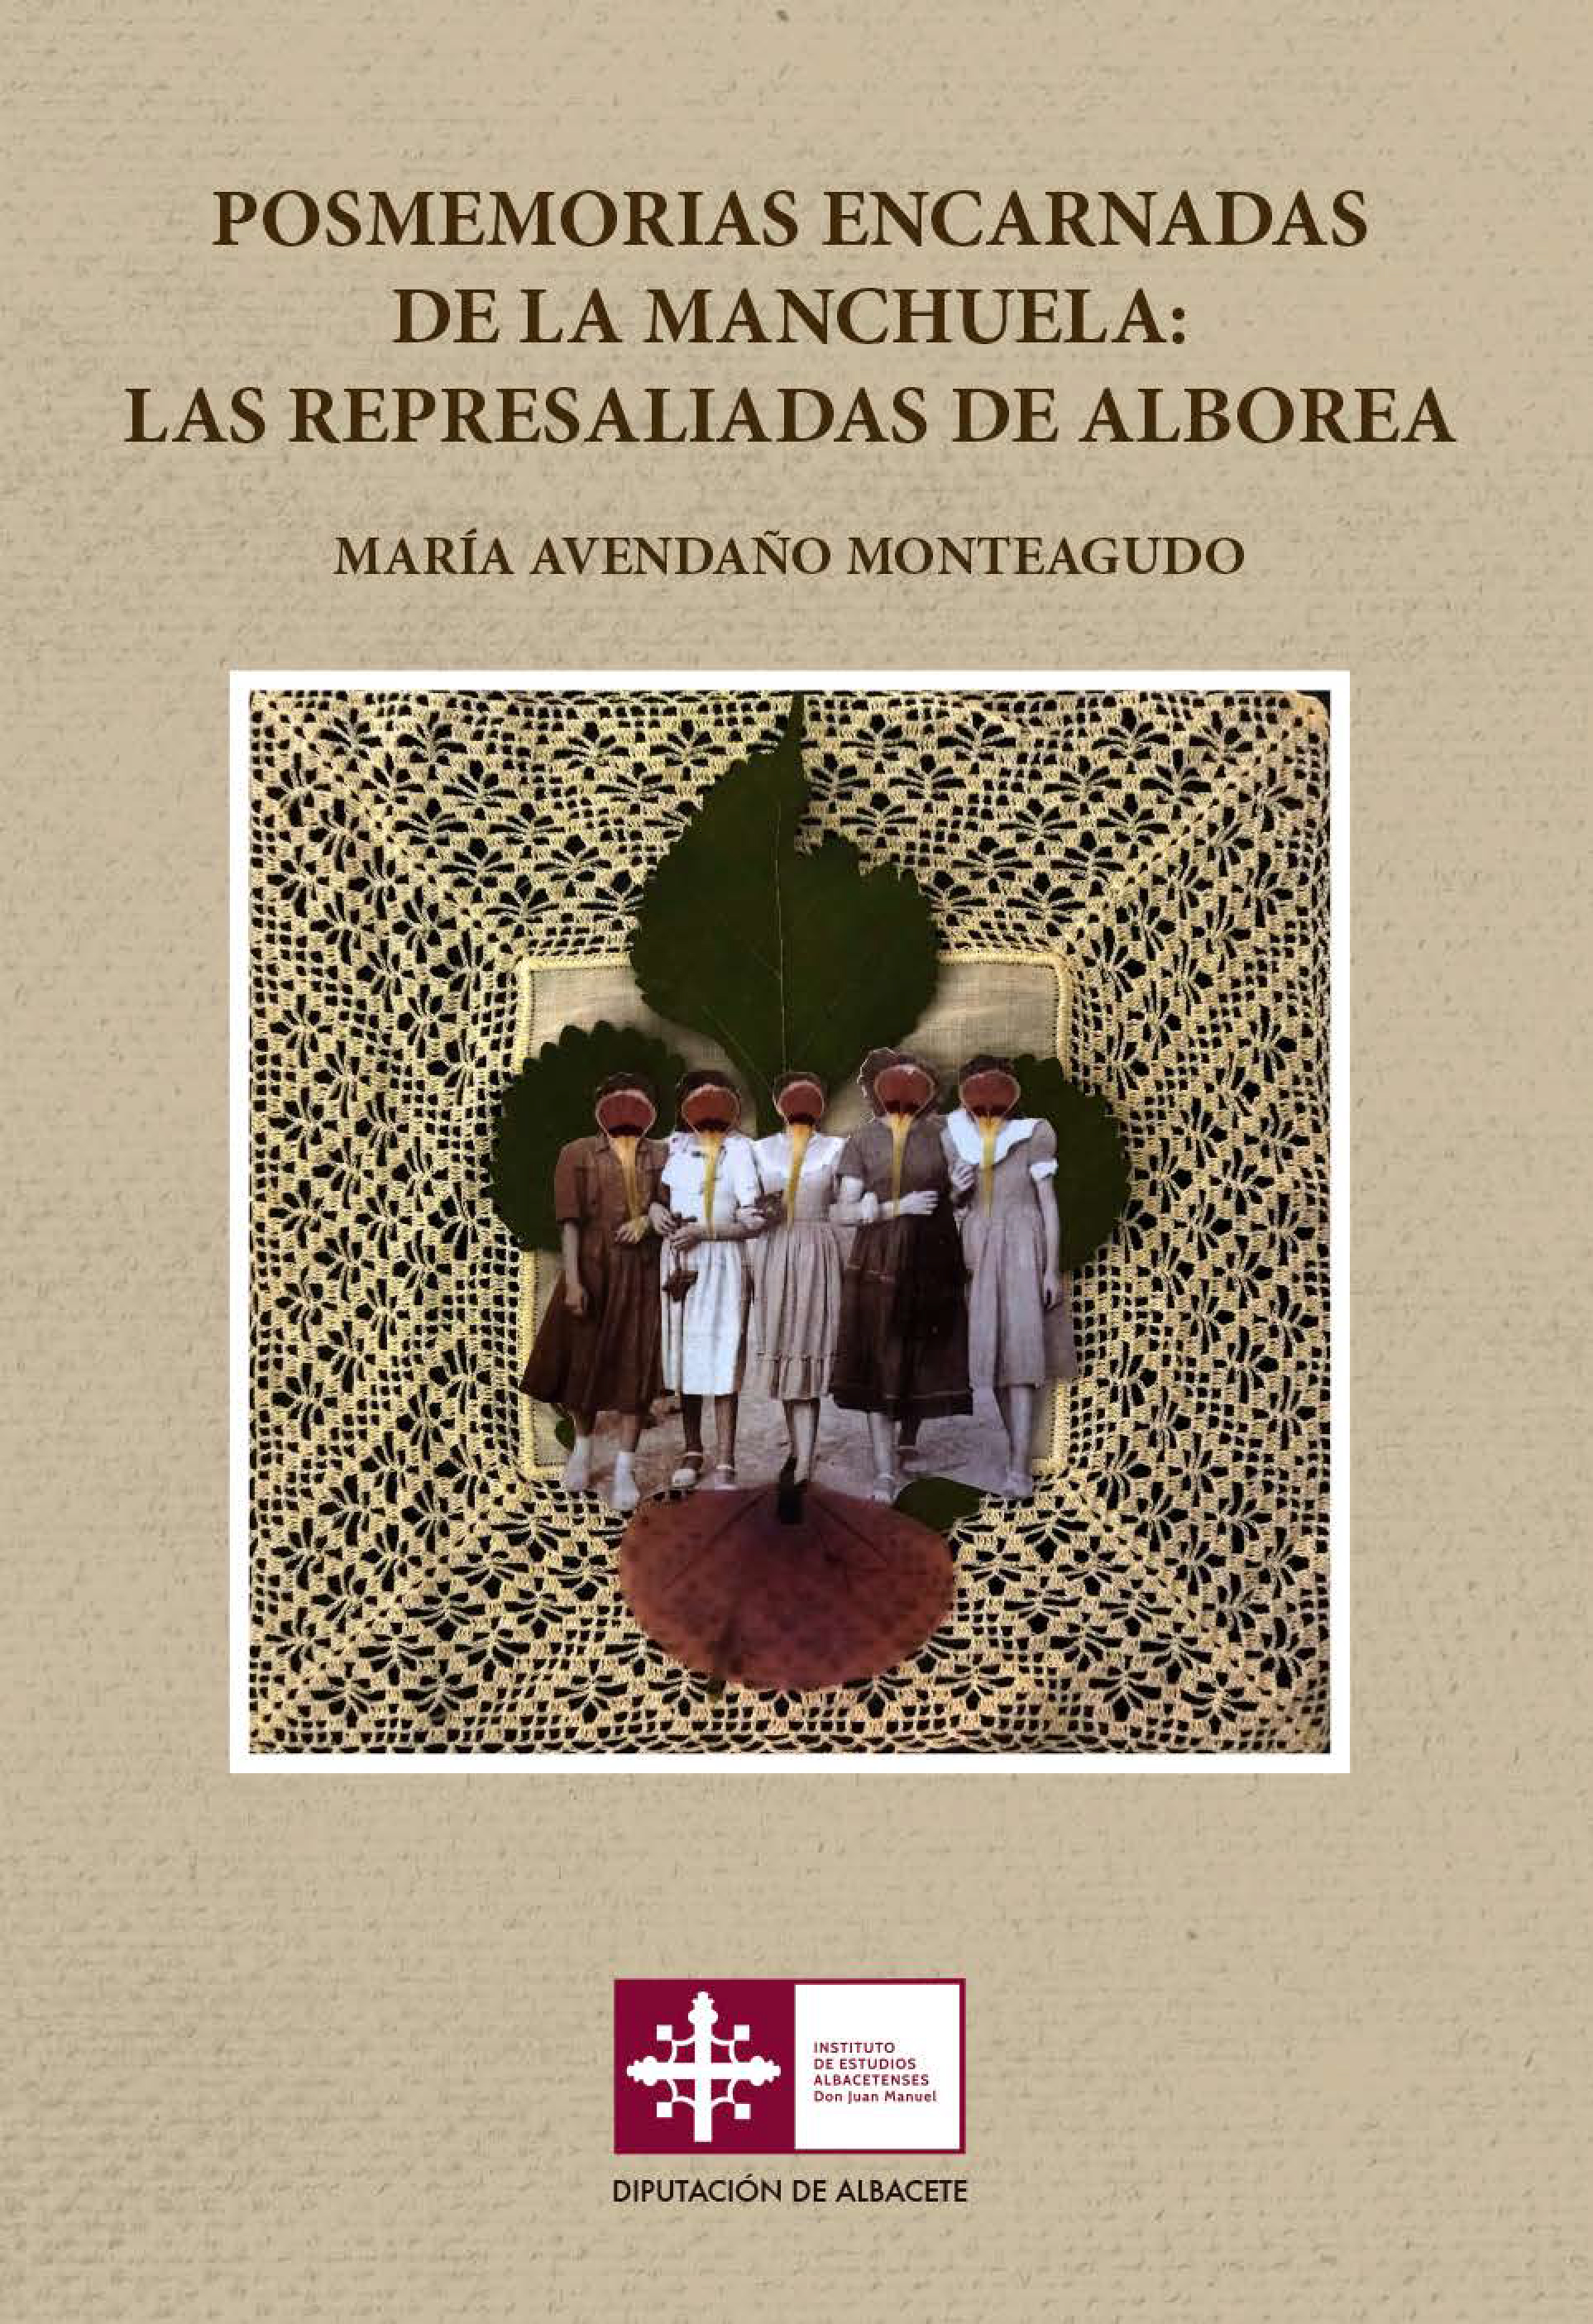 Imagen de portada del libro Posmemorias encarnadas de La Manchuela